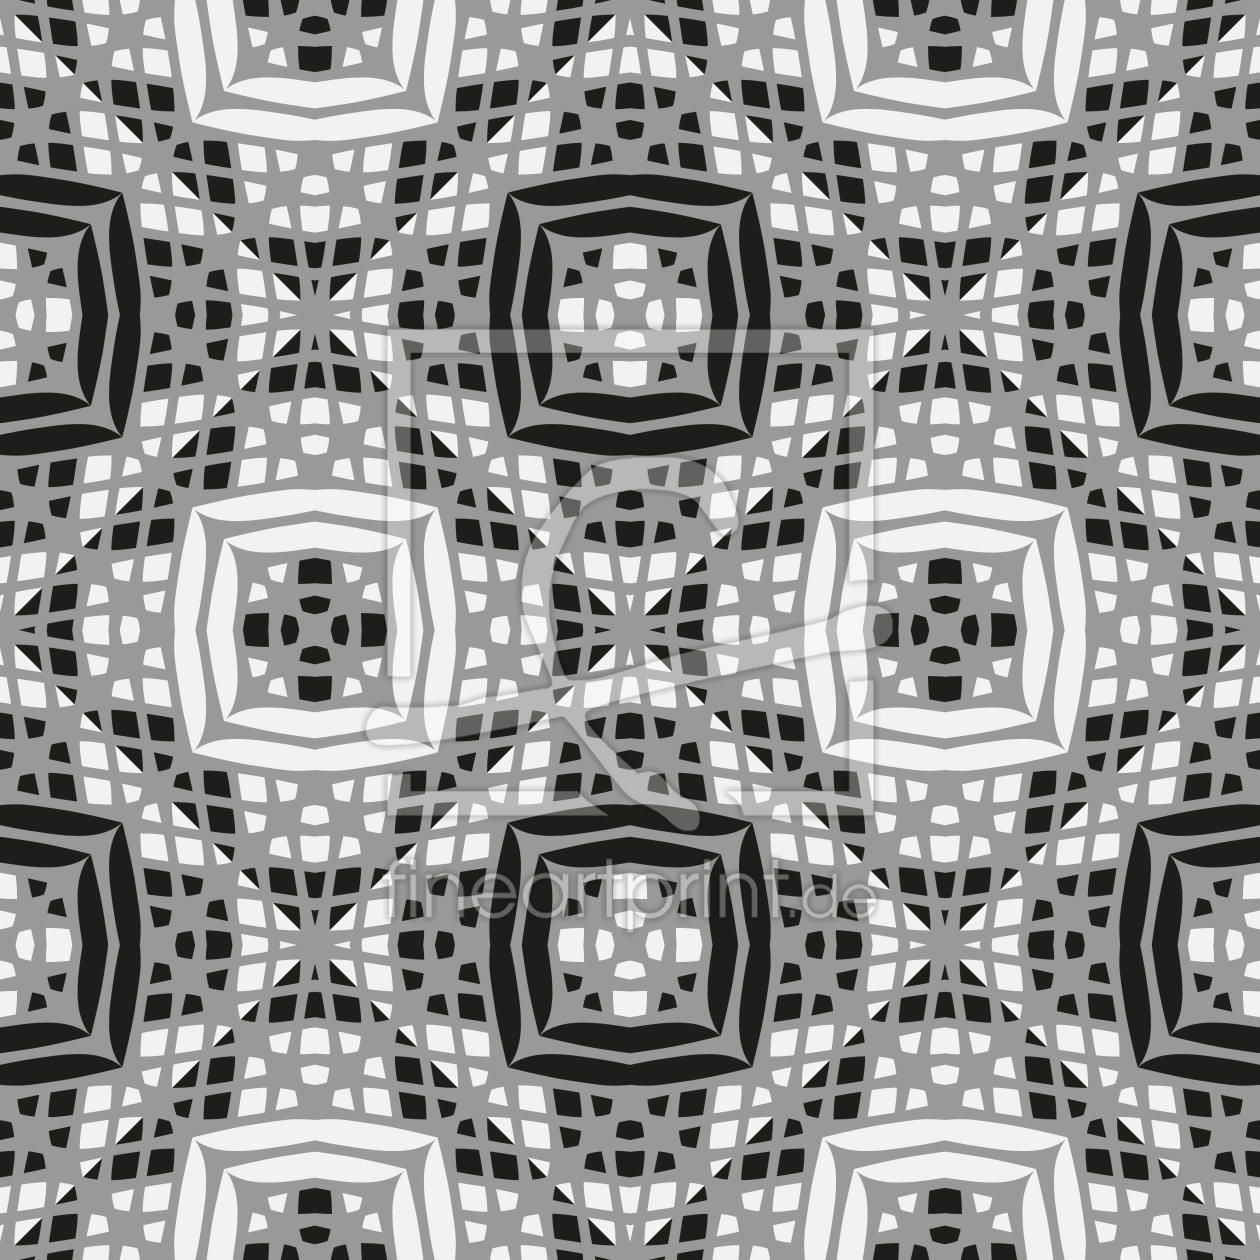 Bild-Nr.: 9013119 Gepatchworkte Rauten erstellt von patterndesigns-com